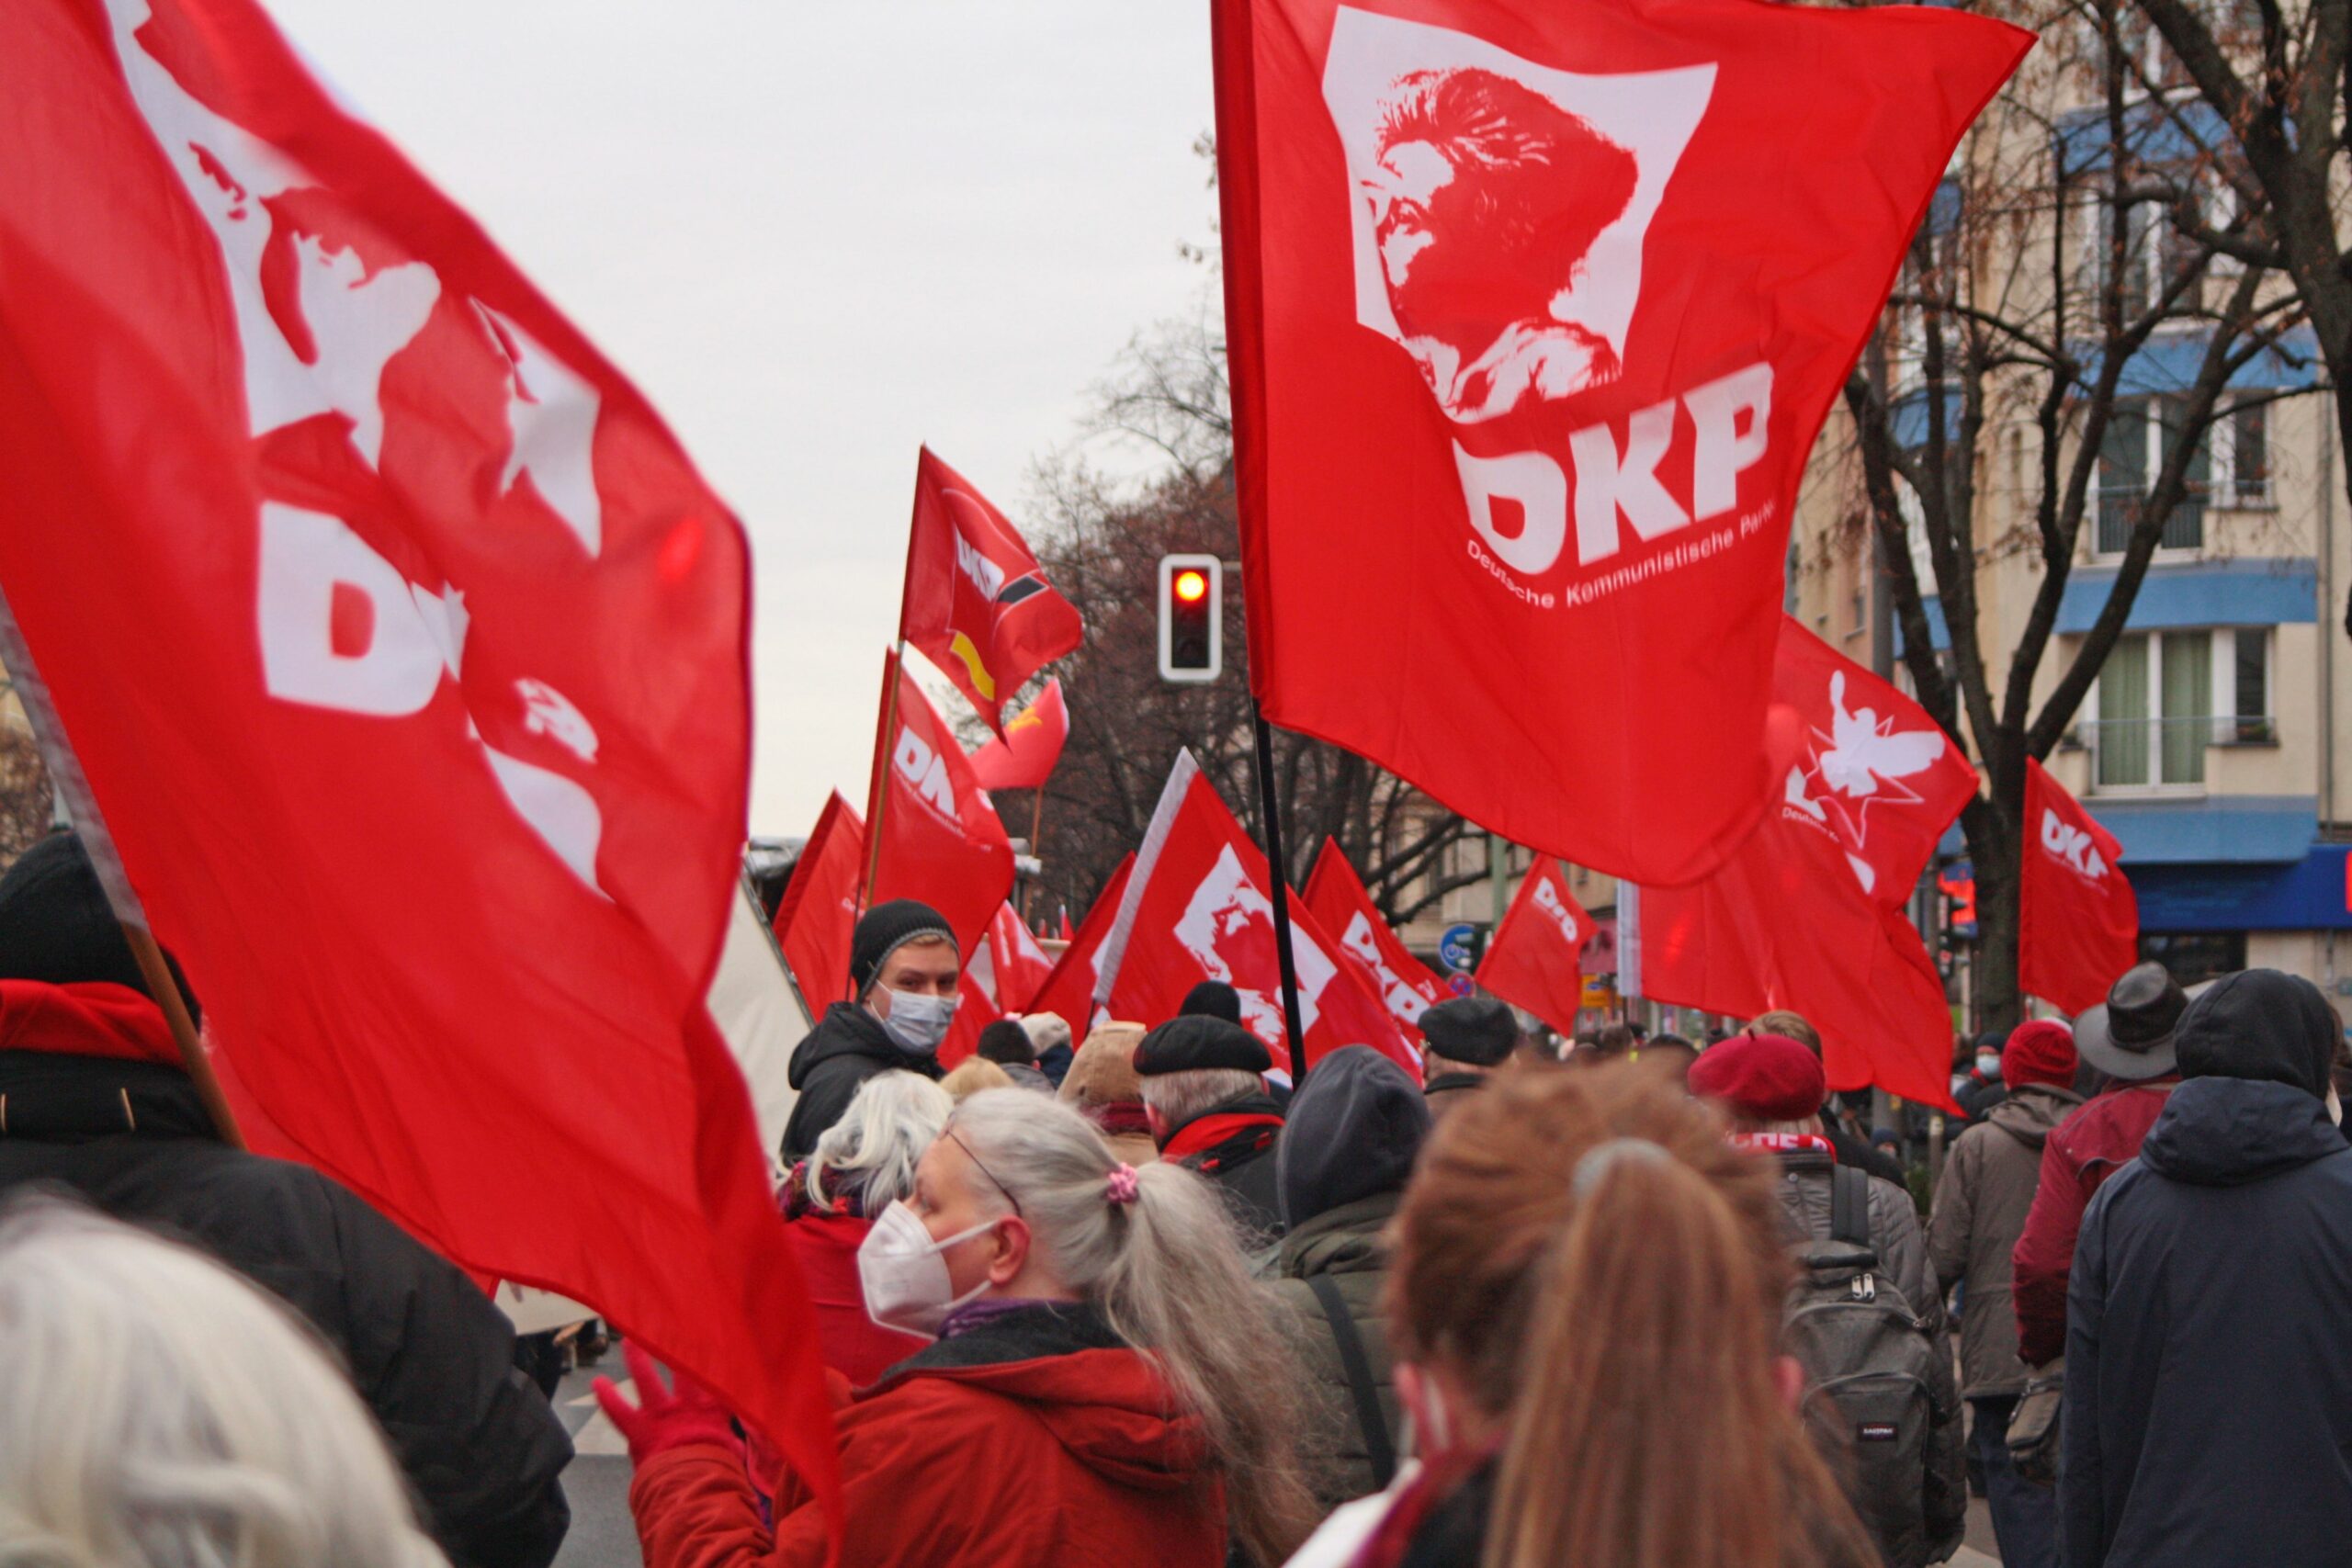 020503 dkp scaled - Jahresauftakt der Roten - DKP, Luxemburg-Liebknecht-Demonstration, SDAJ - Politik